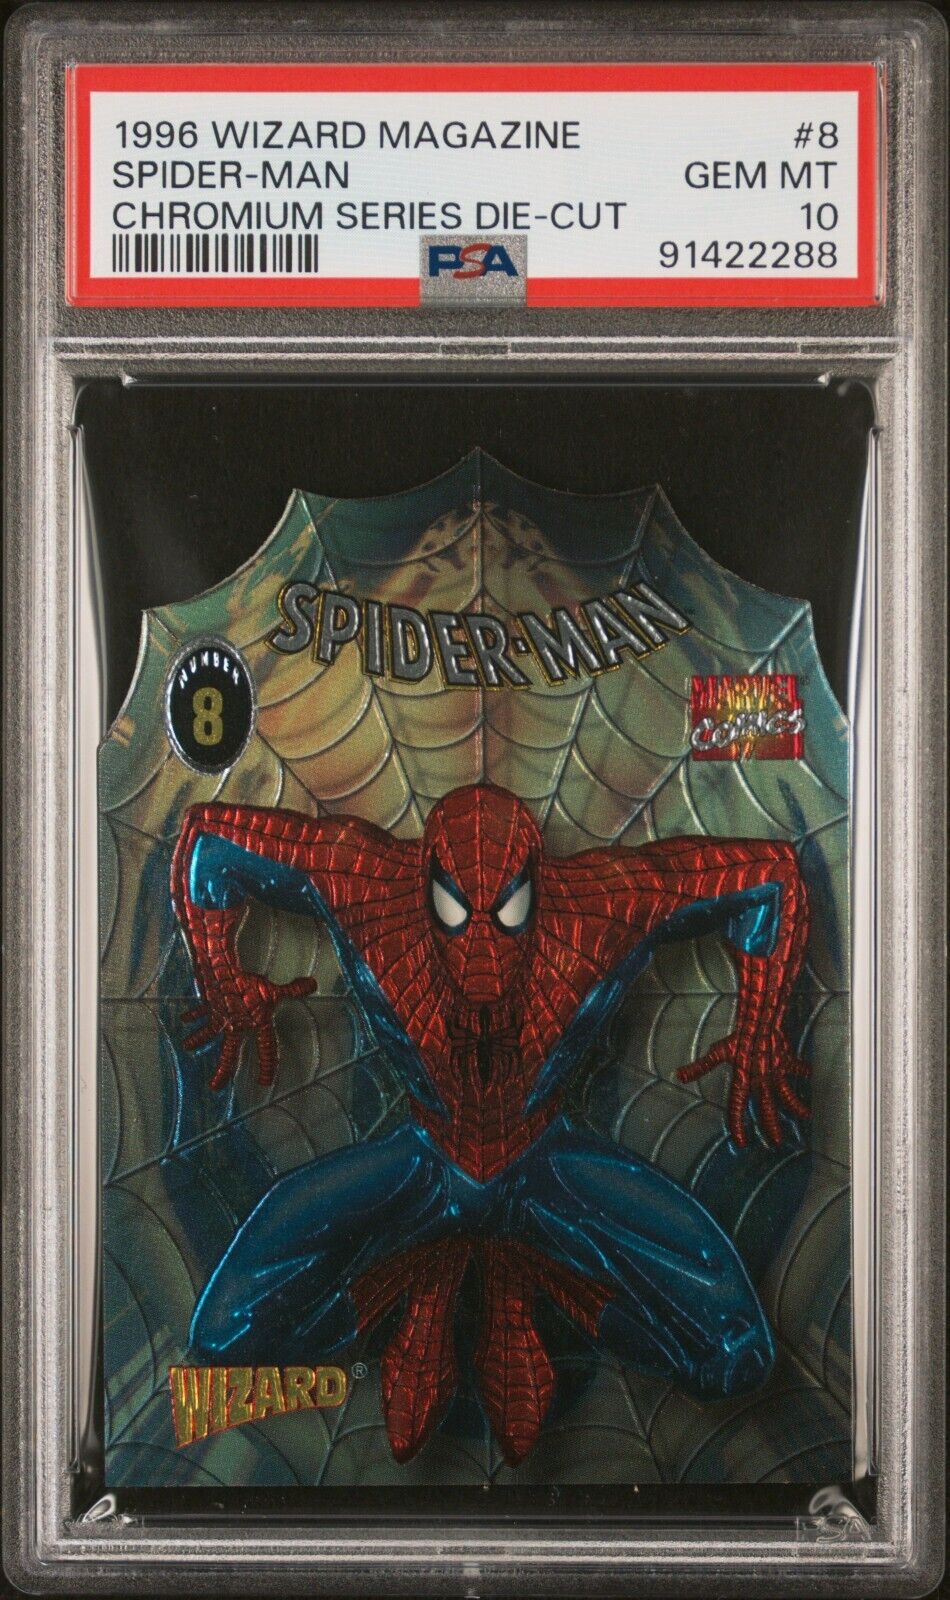 1996 Wizard Magazine Spider-Man Chromium Series Die-Cut #8 GEM MINT PSA 10 RARE